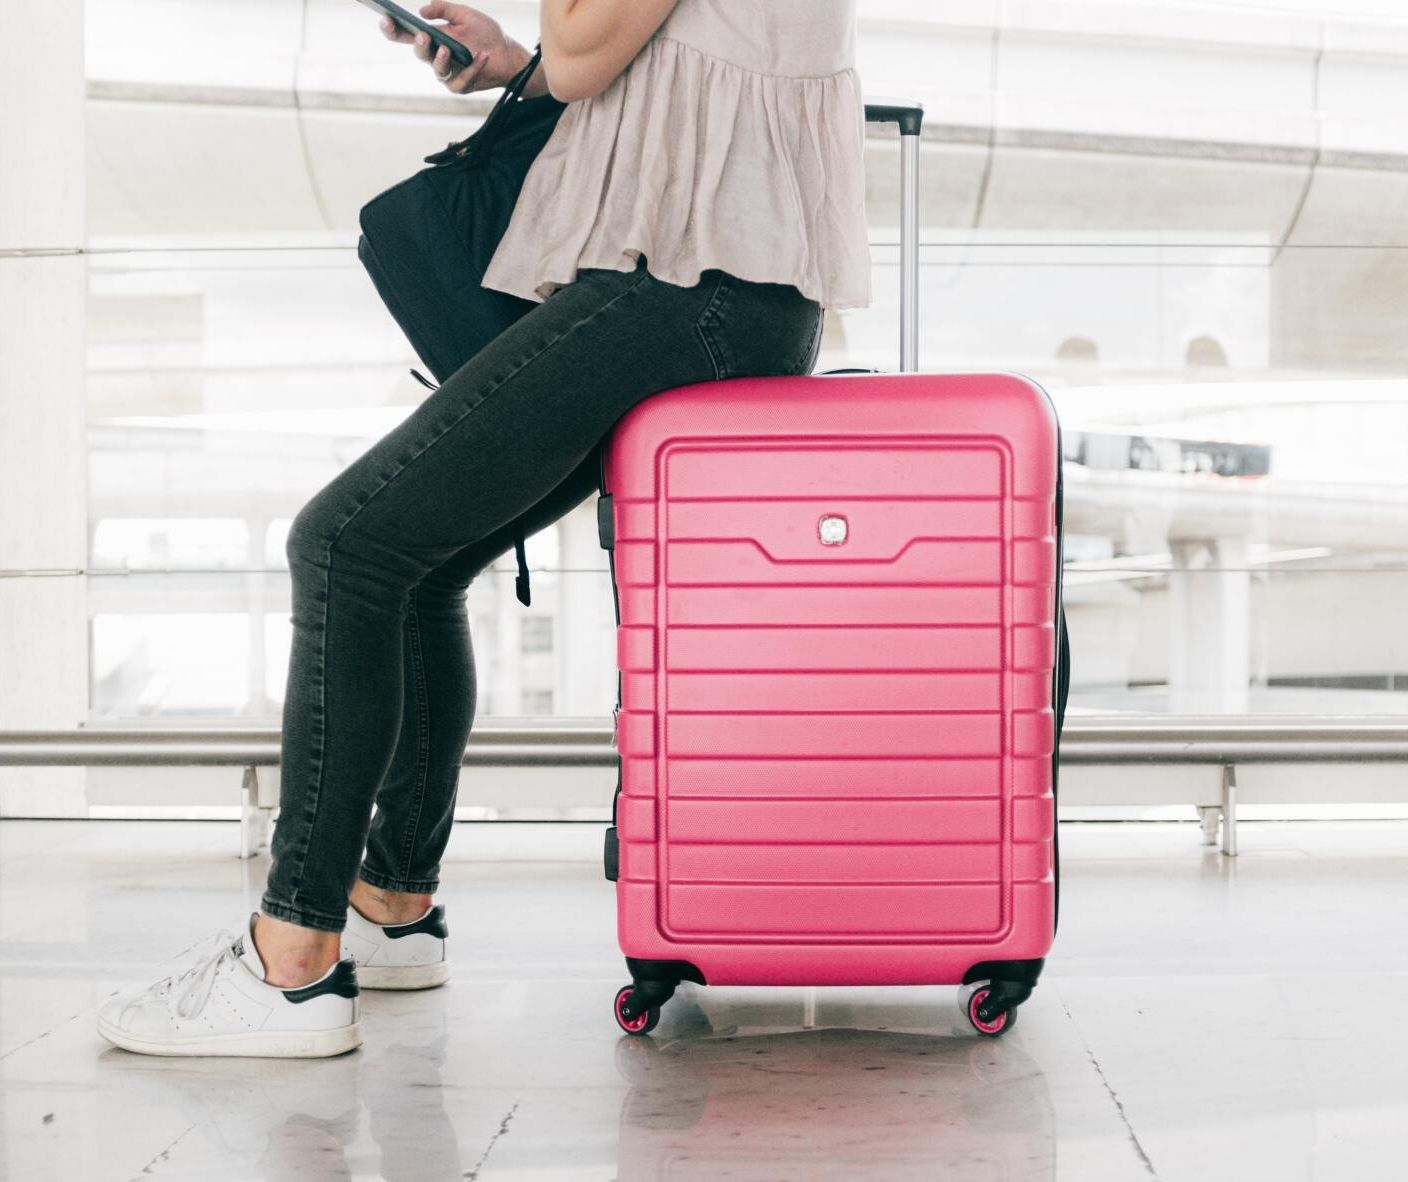 Femme assise sur une valise rose dans un aéroport